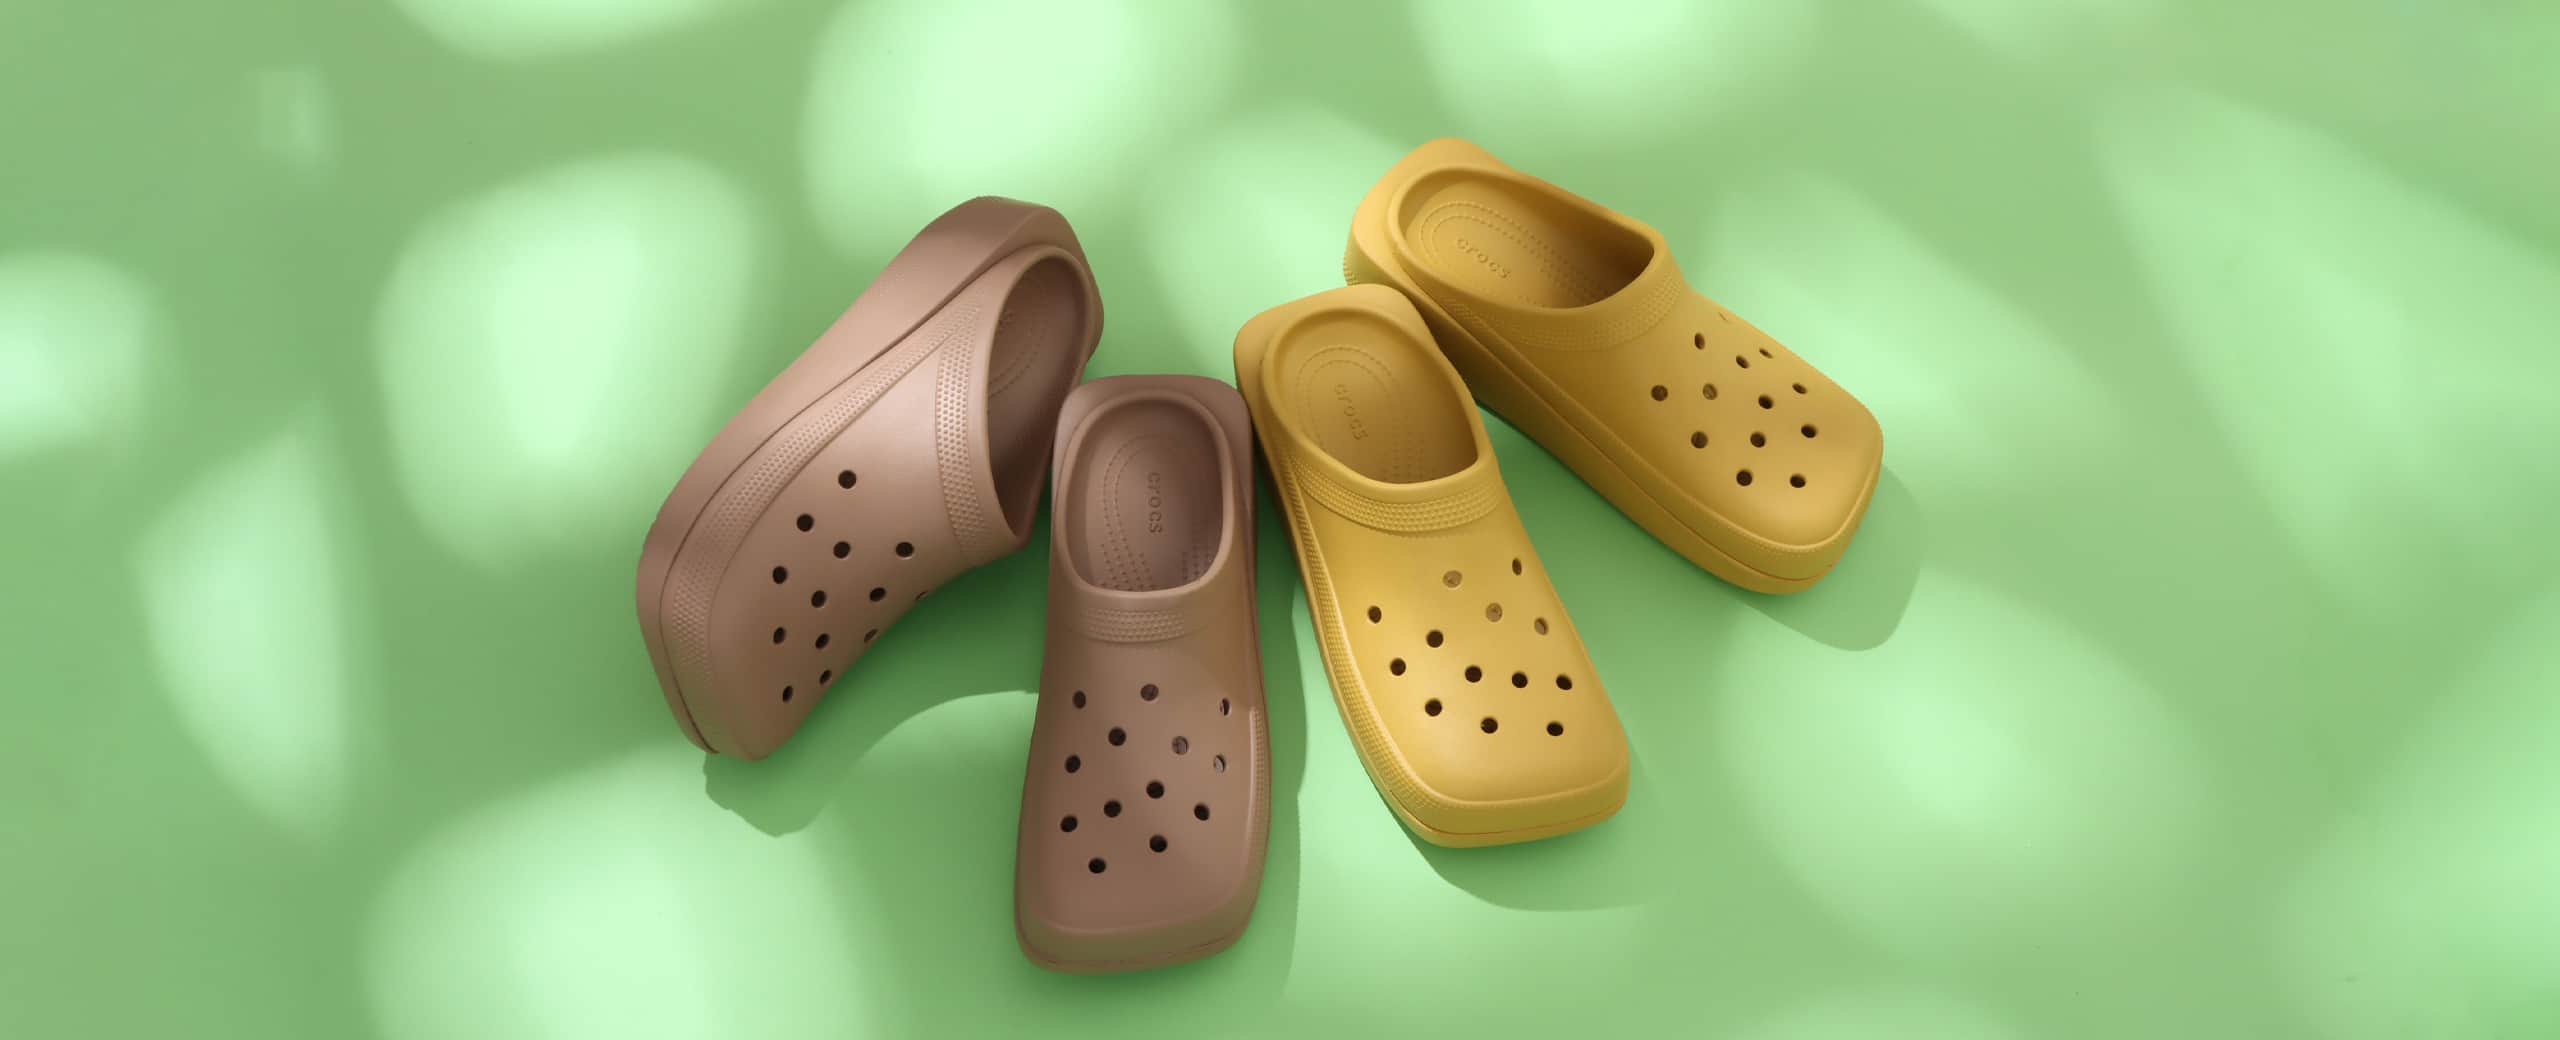 crocs-classic-blunt-toe